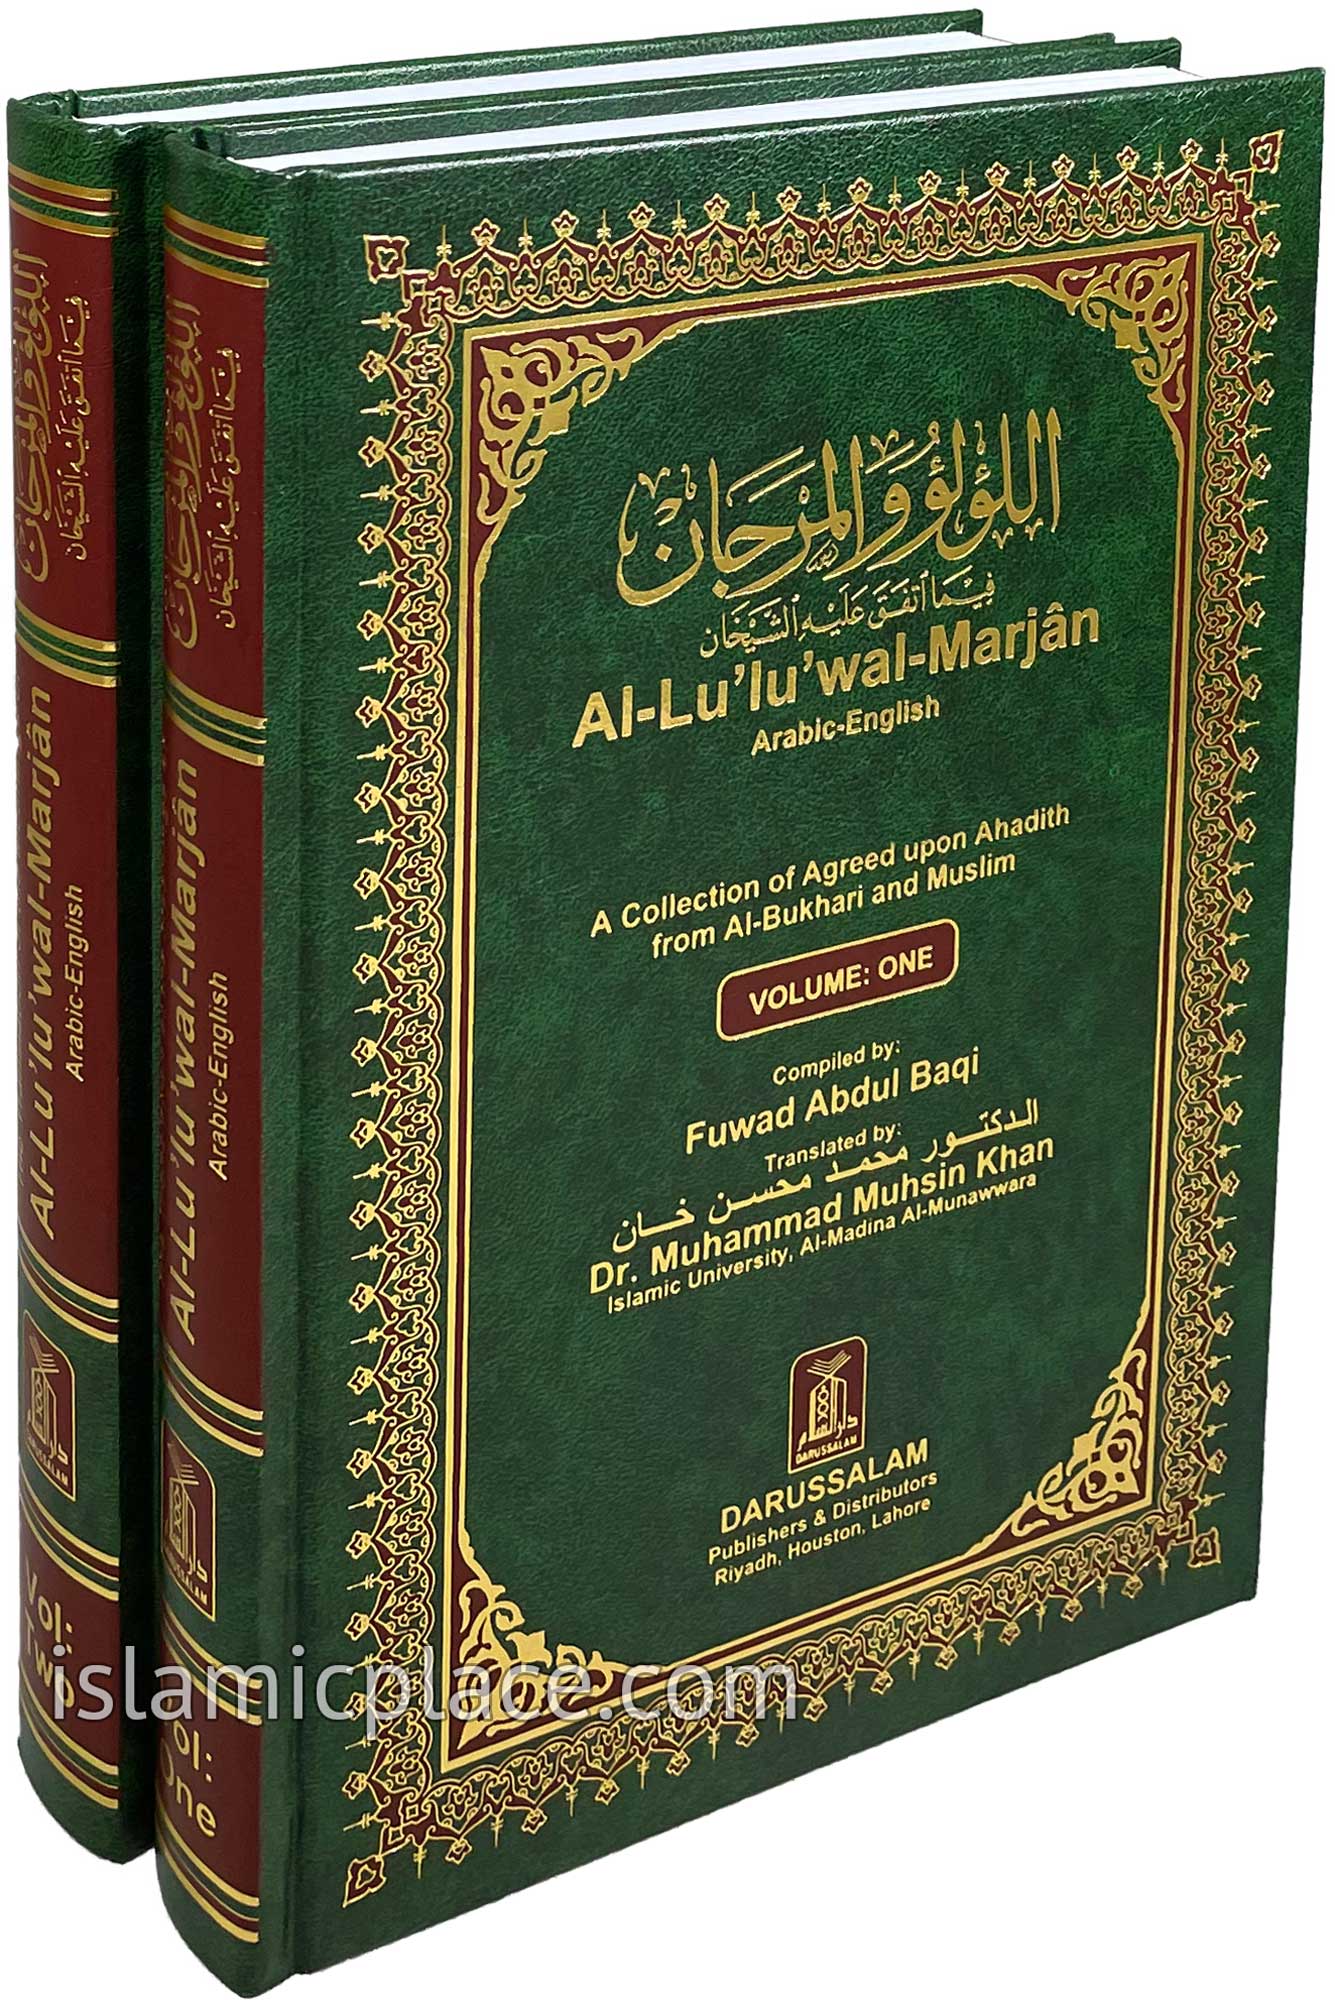 [2 vol set] Al-Lu'lu'wal-Marjan (Pearls & Corals)